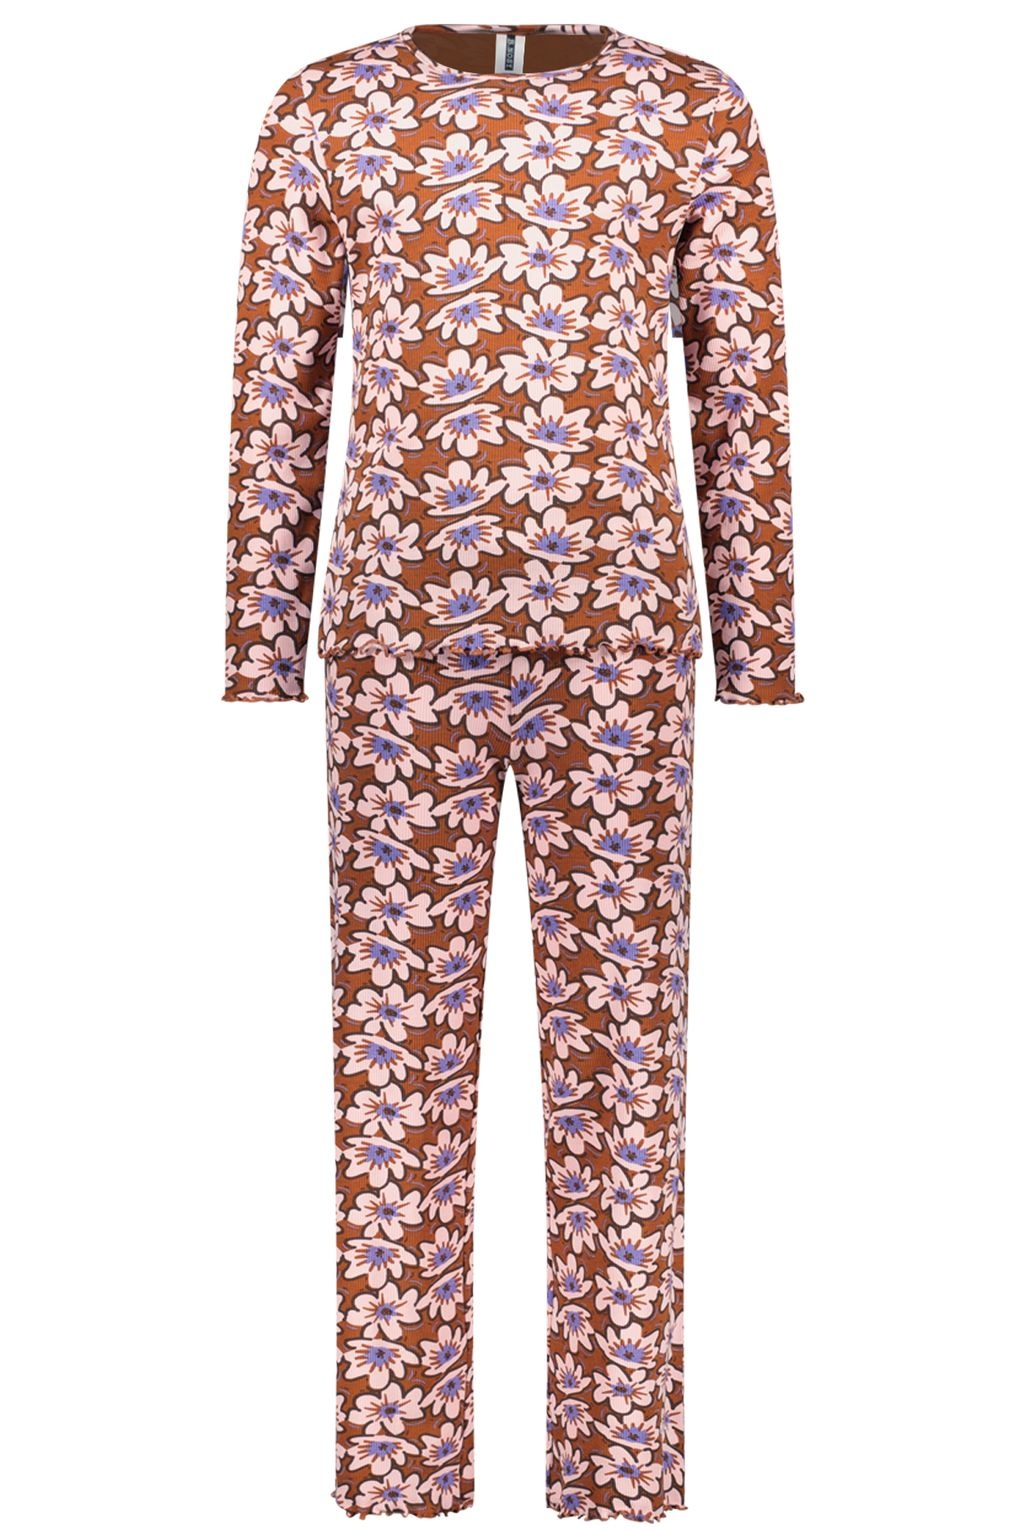 B.Nosy Meisjes pyjama - Sarah - Vivid AOP